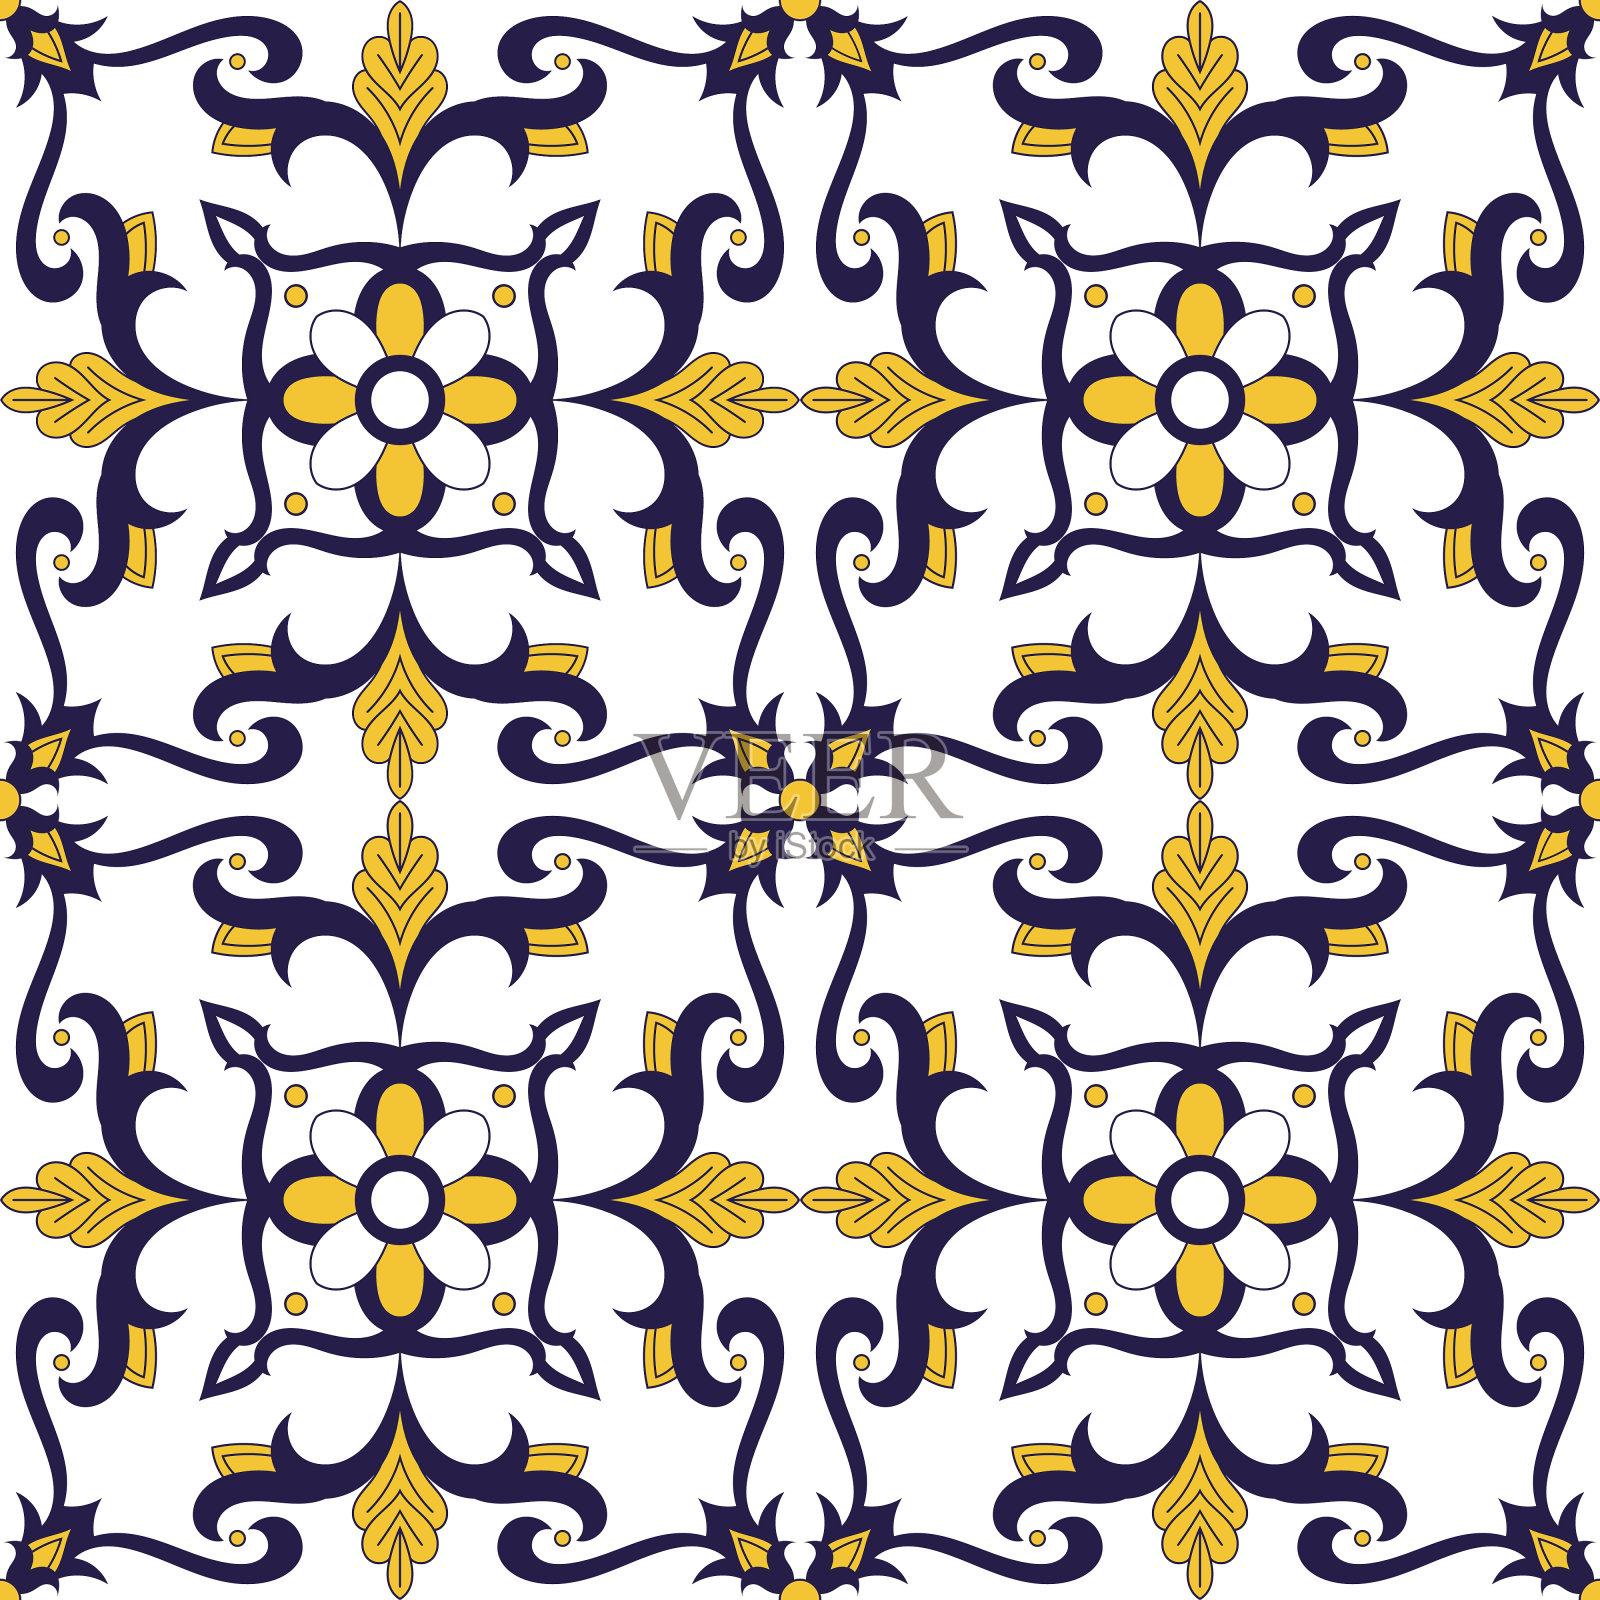 葡萄牙瓷砖图案向量与花卉装饰。葡萄牙azulejo，墨西哥talaveta，西班牙或意大利majolica主题。背景为陶瓷，墙纸，床单或枕头织物。插画图片素材